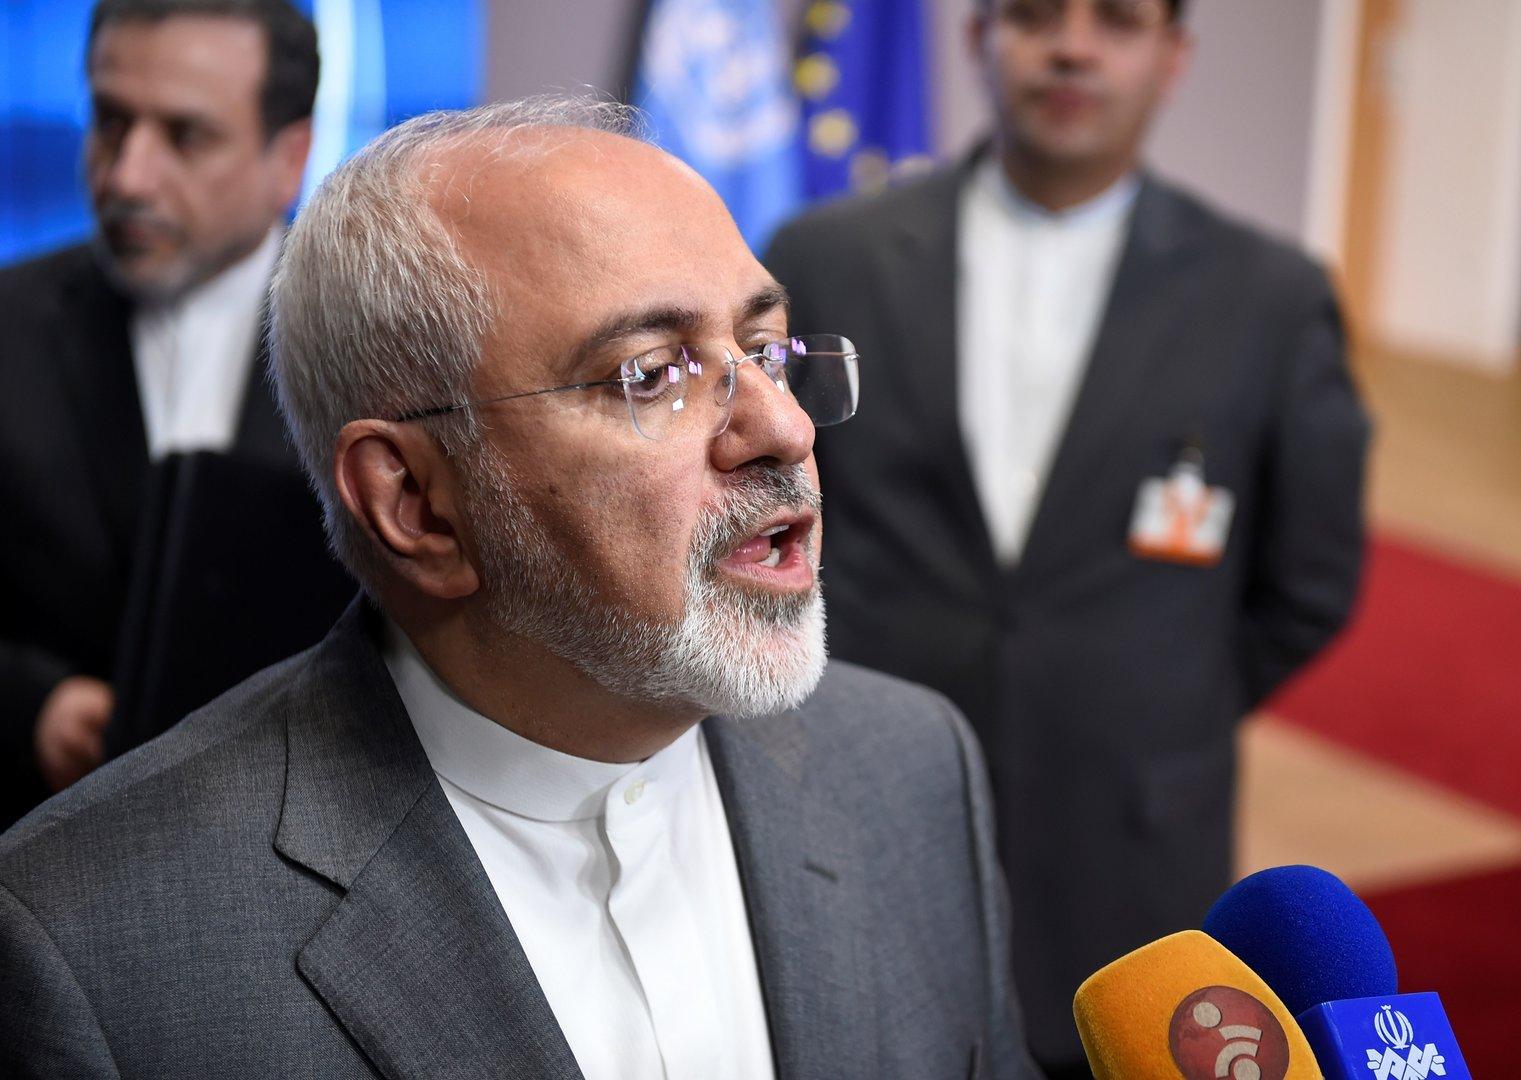 Iran hält sich weiter an Atomabkommen